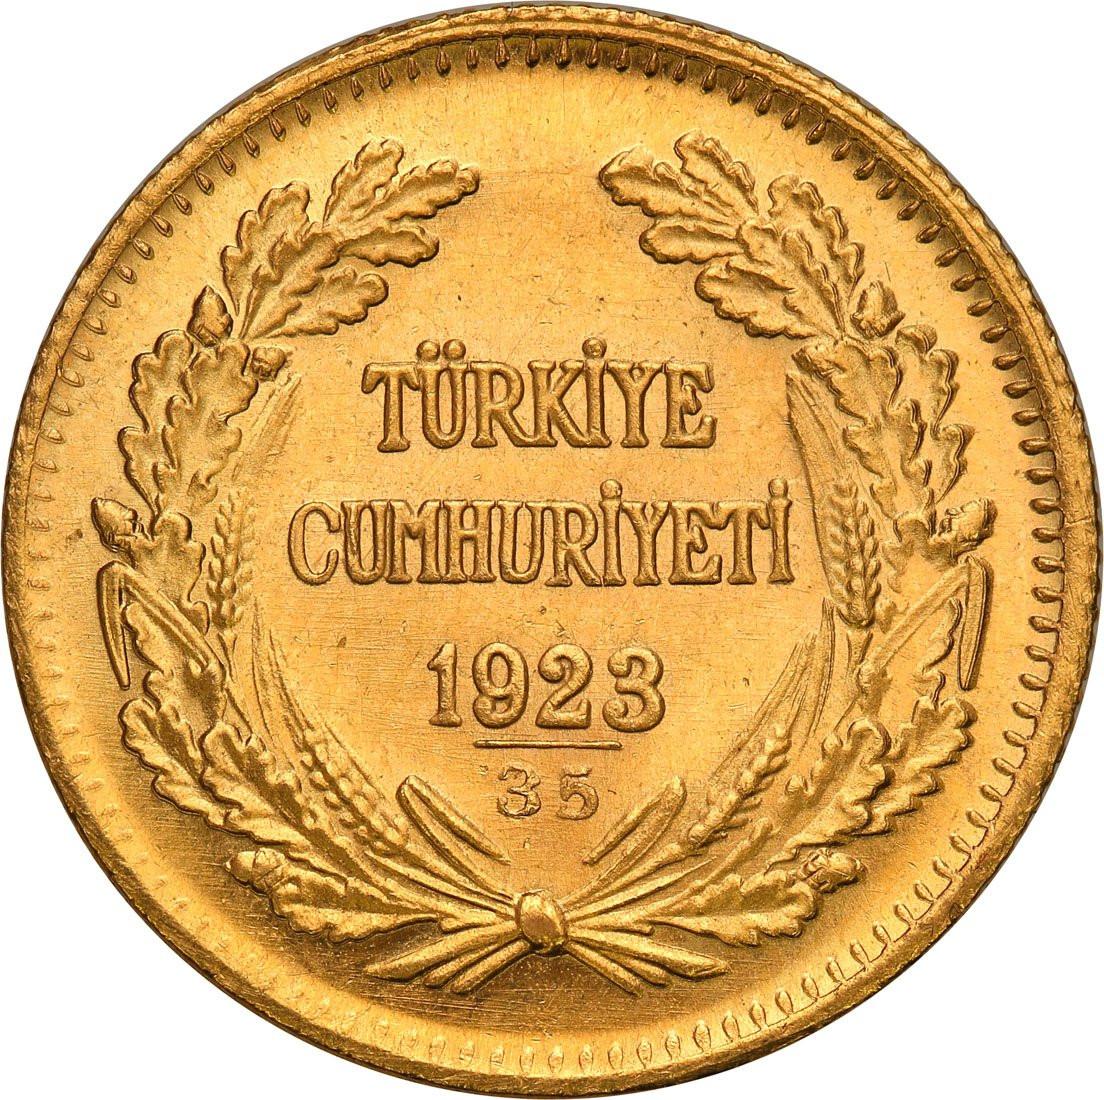 Turcja 100 piastrów 1958 (1923 + 35)